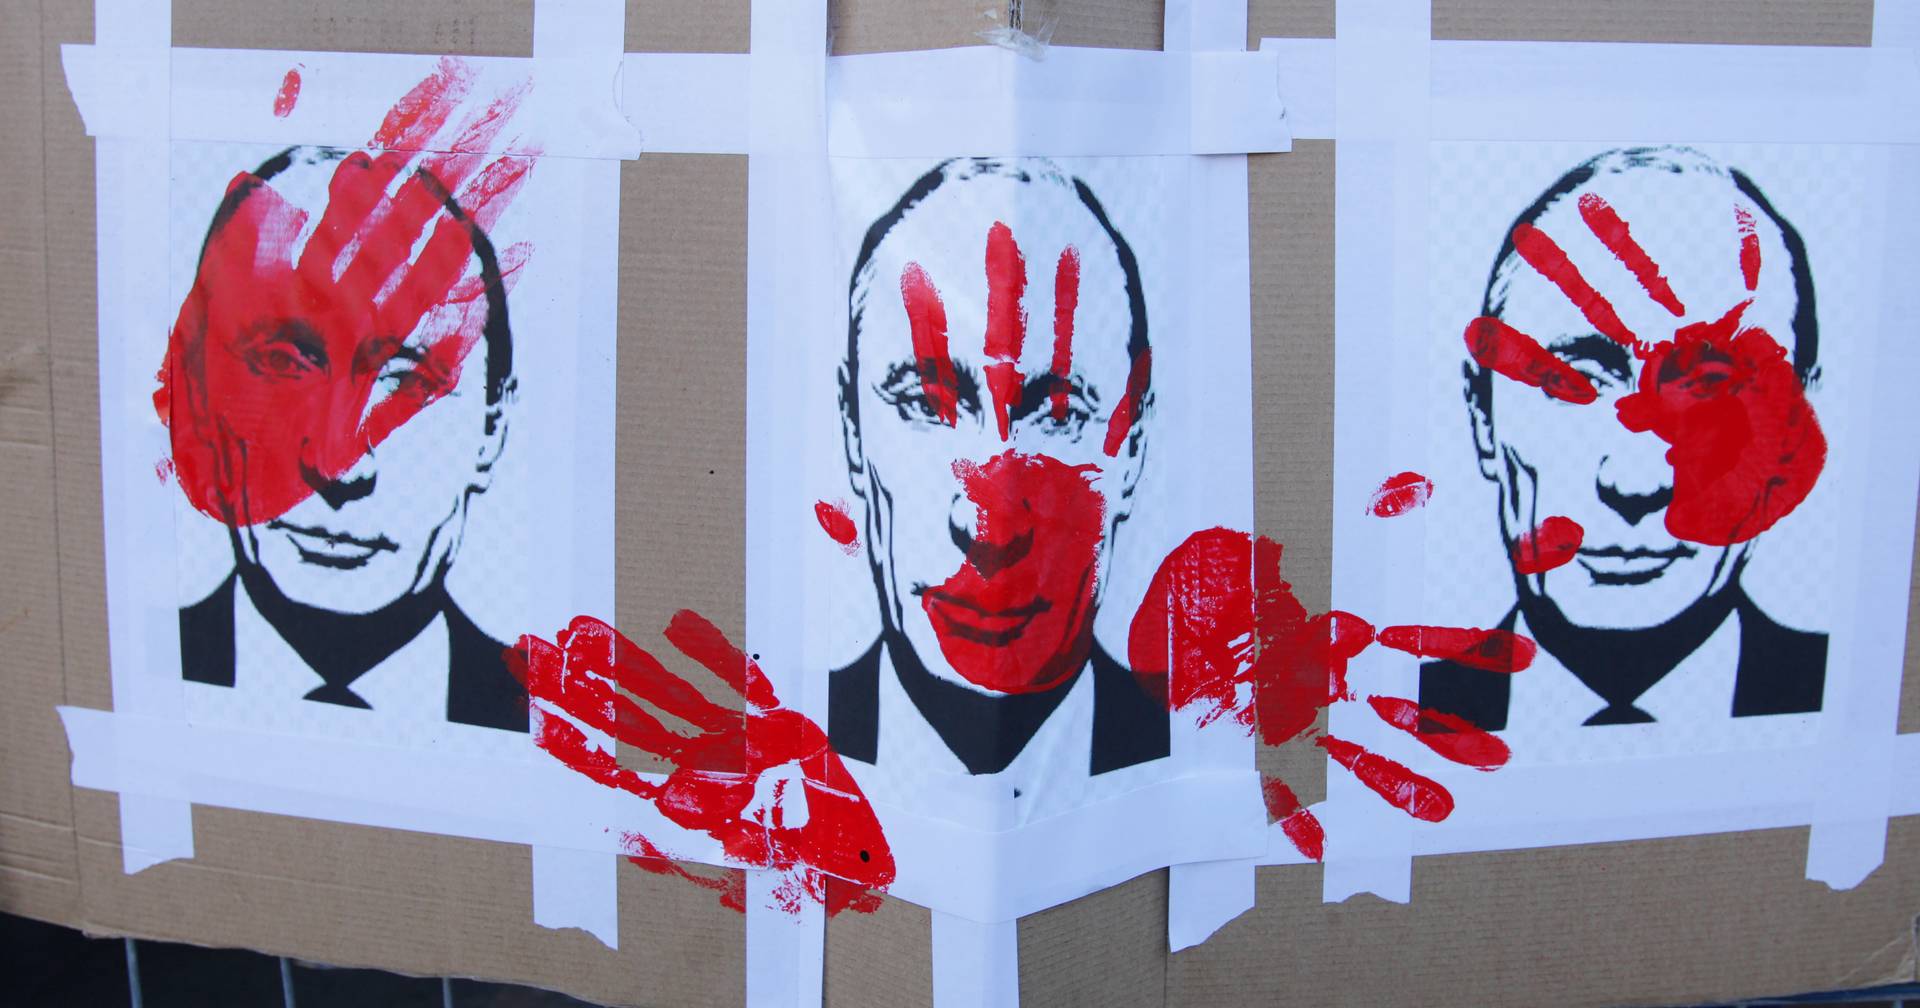 Rússia: petição de autarcas a pedir demissão de Putin já reuniu 35 assinaturas